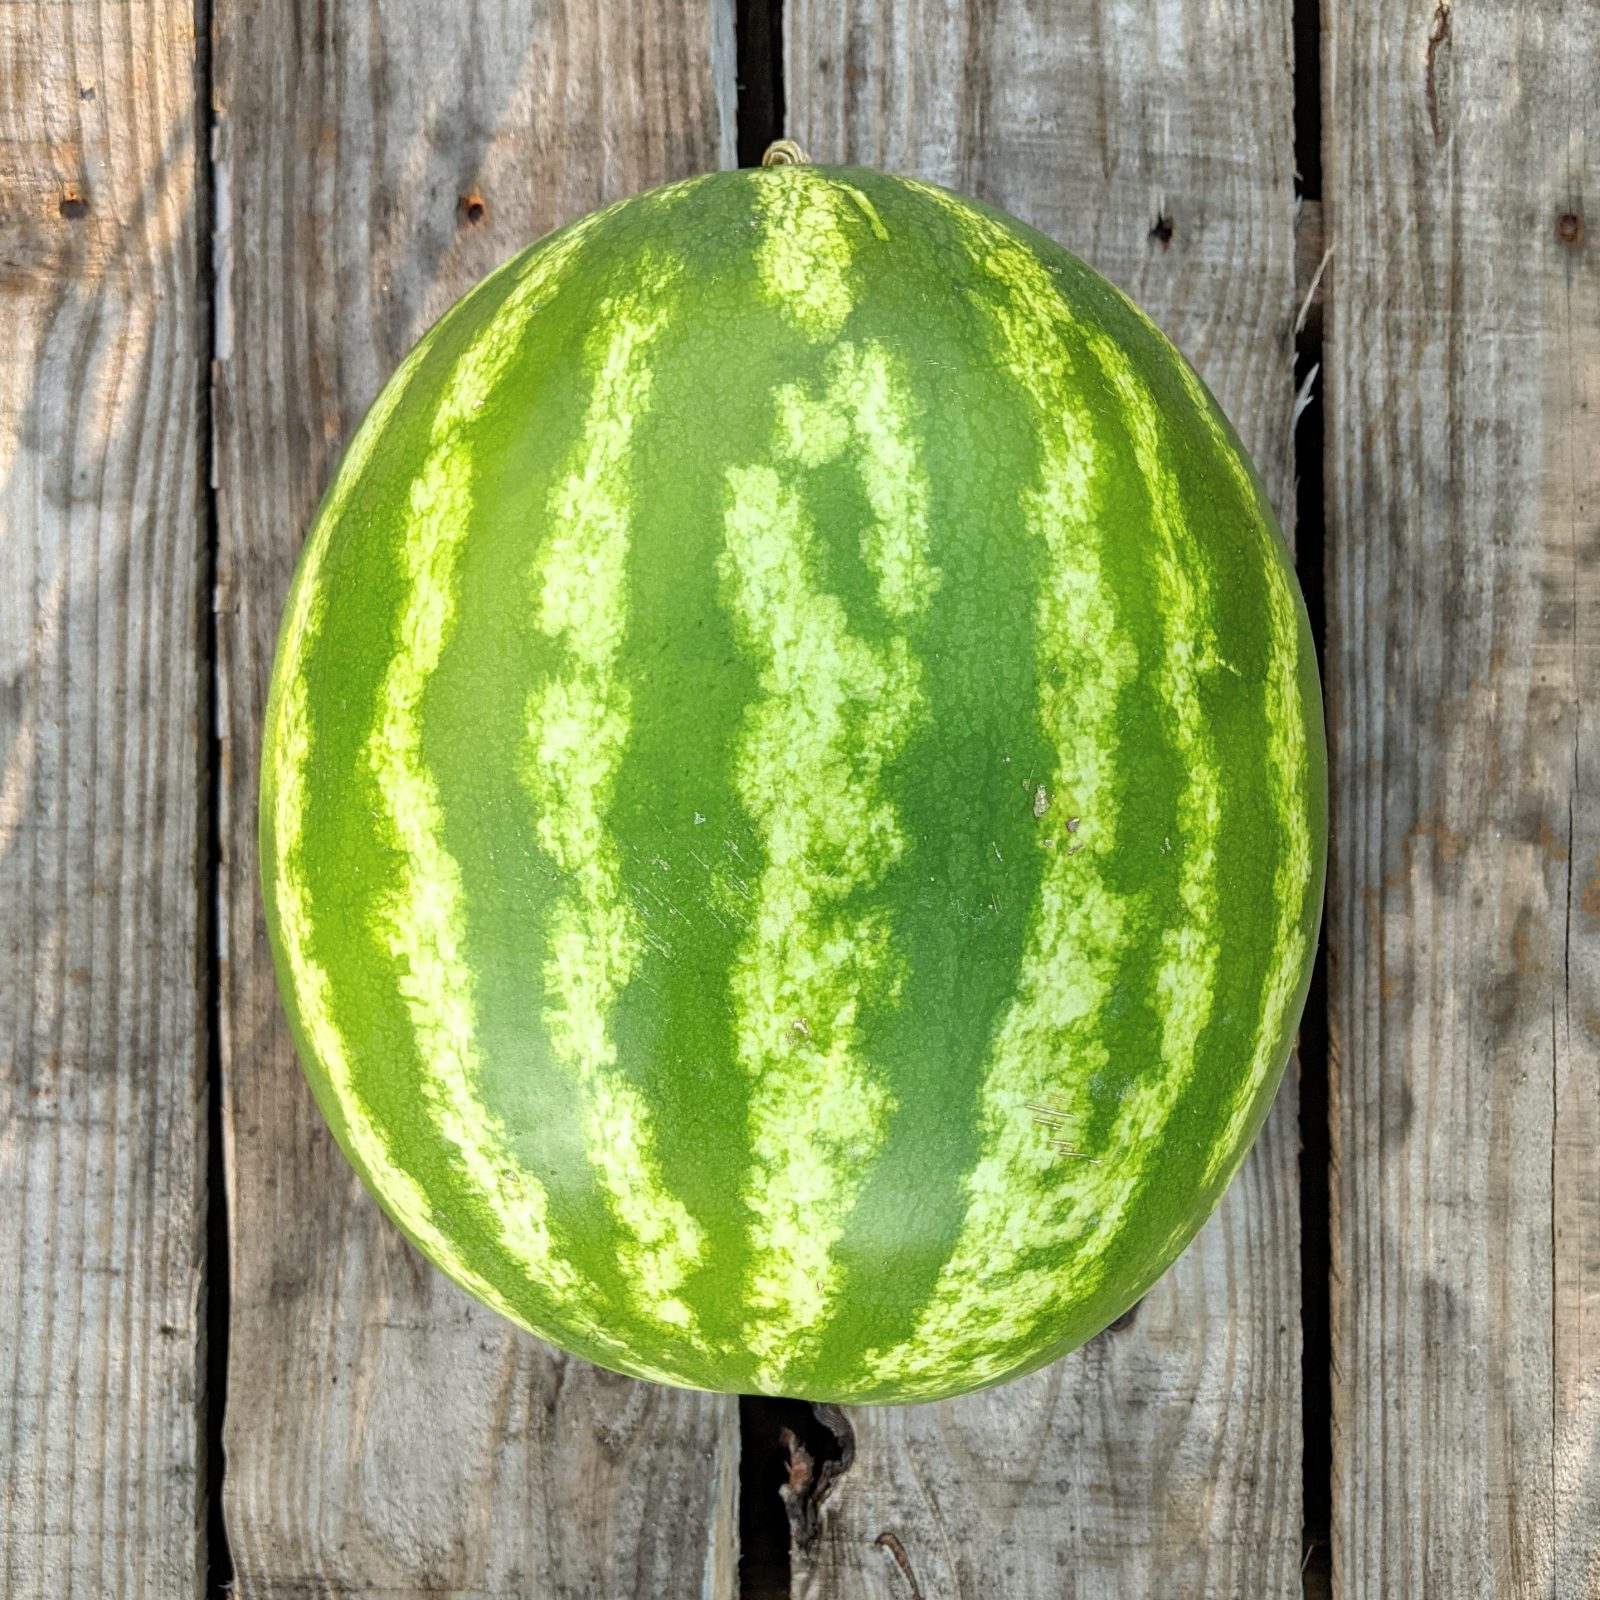 round dark and green striped watermelon